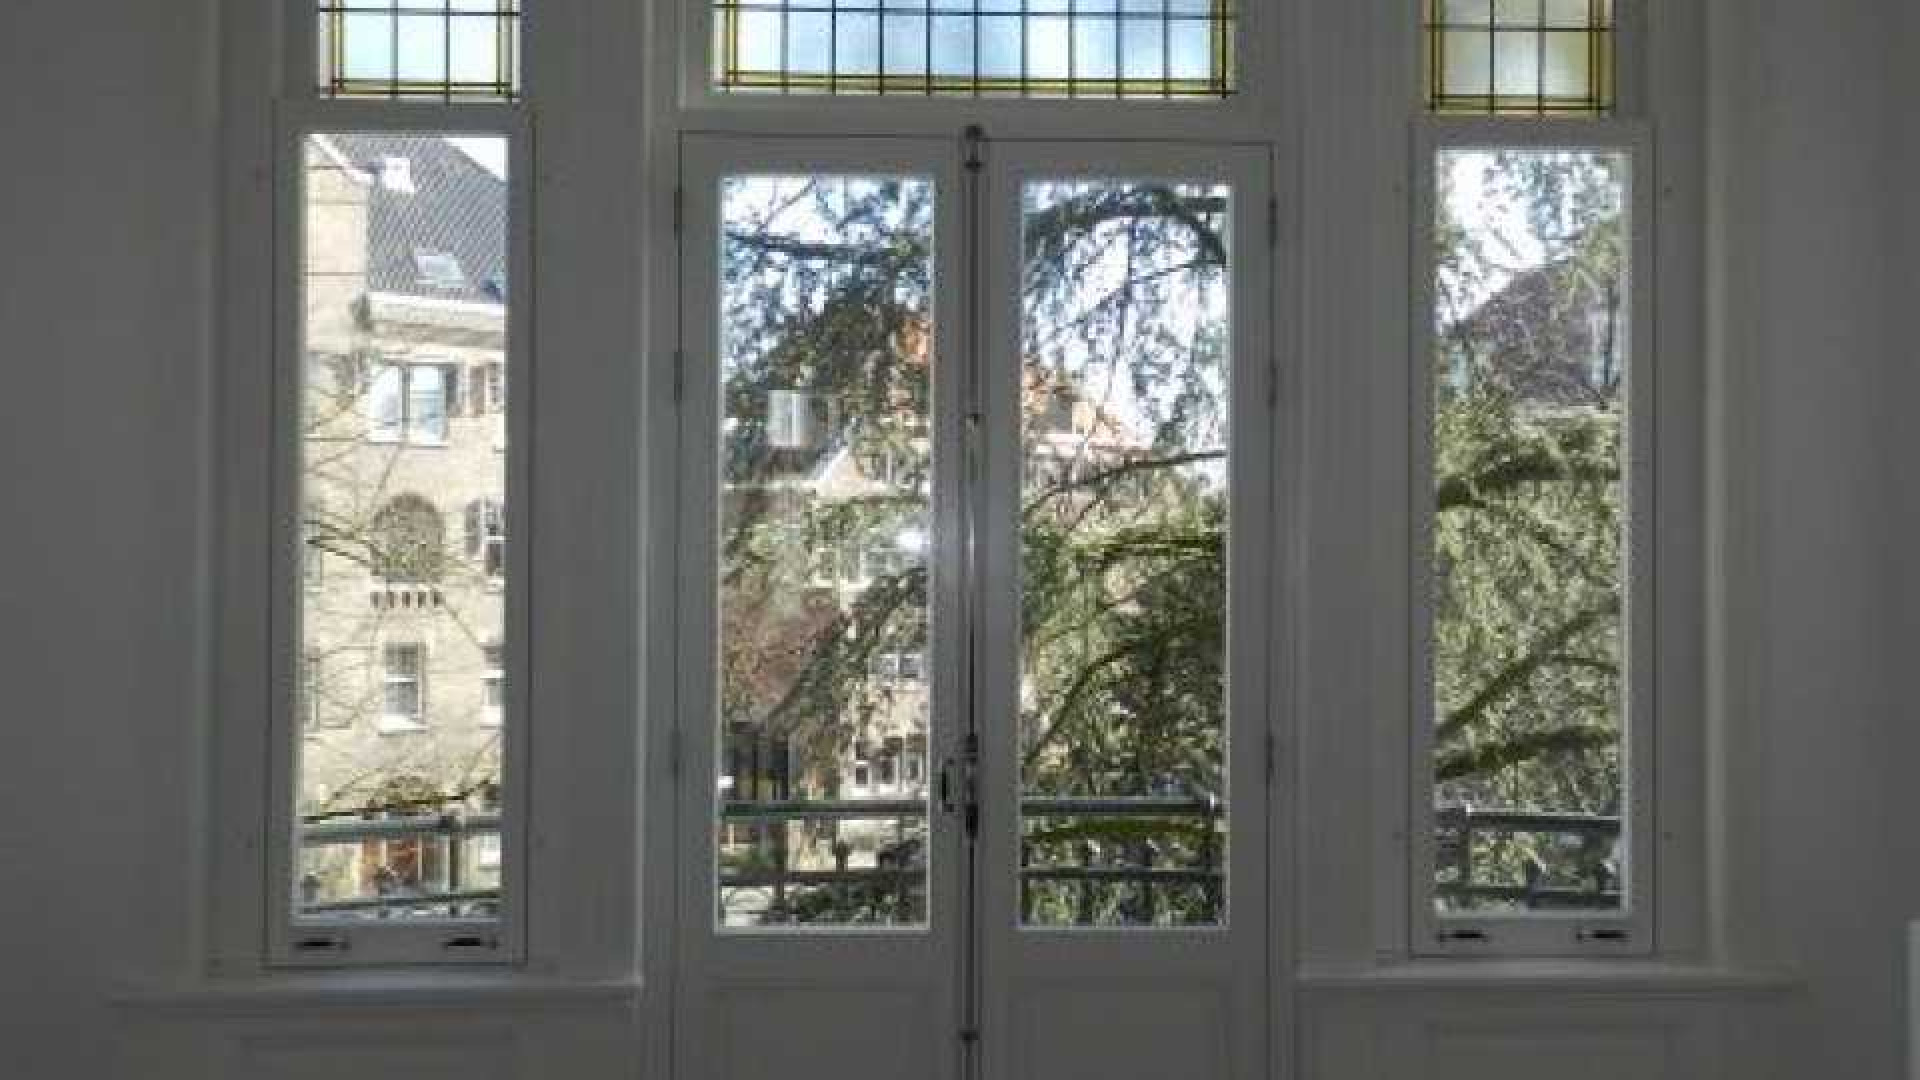 Frank Rijkaard zoekt huurder voor zijn zeer luxe driekamer appartement. Zie foto's